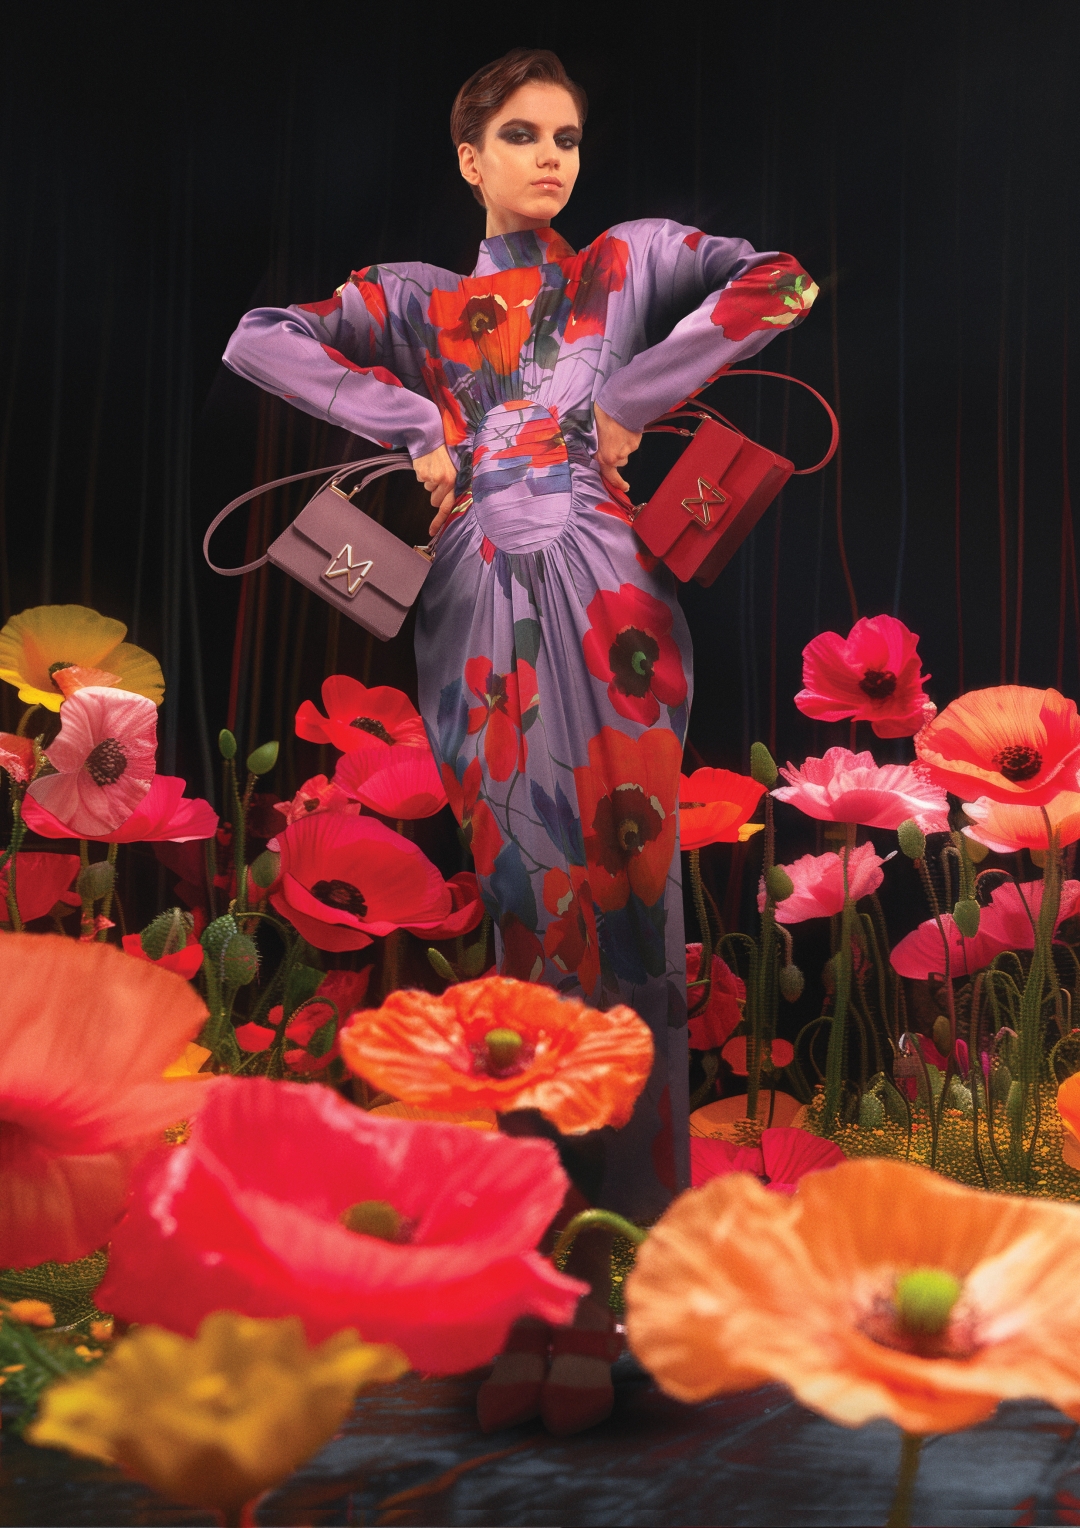 Florals for spring? Modna zajednica kaže – da, a potvrđuje i nova viralna kampanja modne kuće Mona